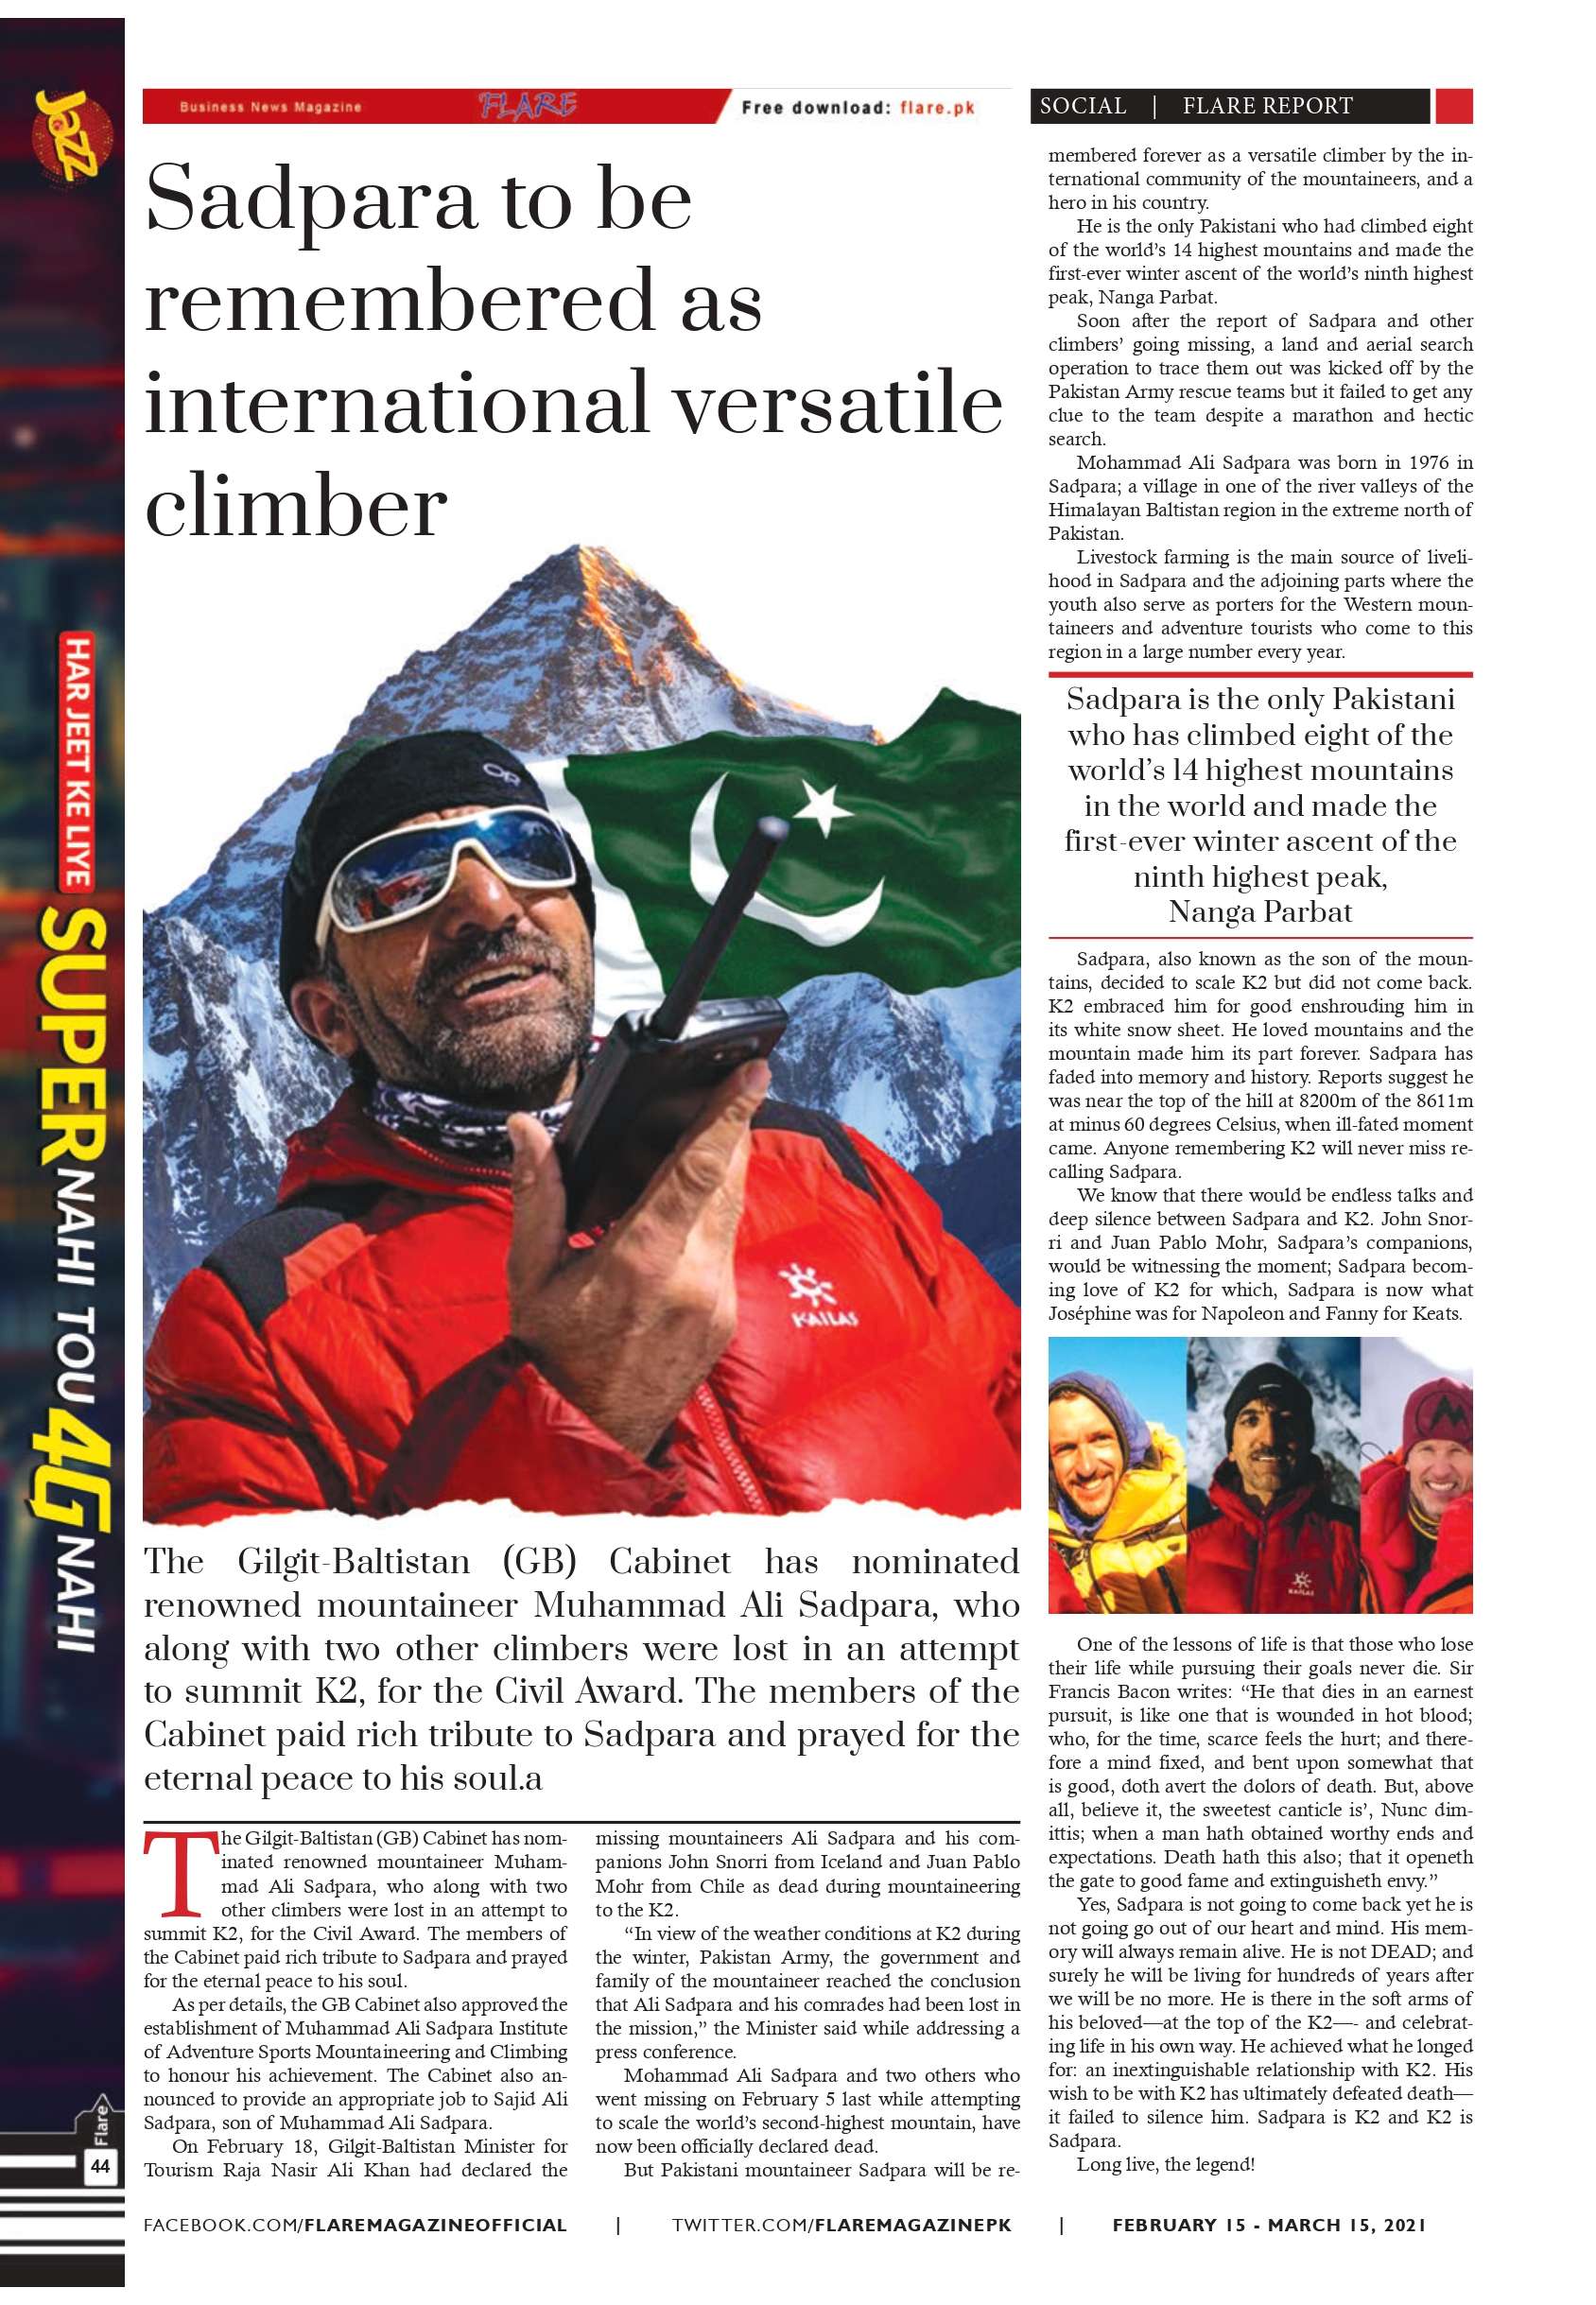 Sadpara to be remembered as international versatile climber